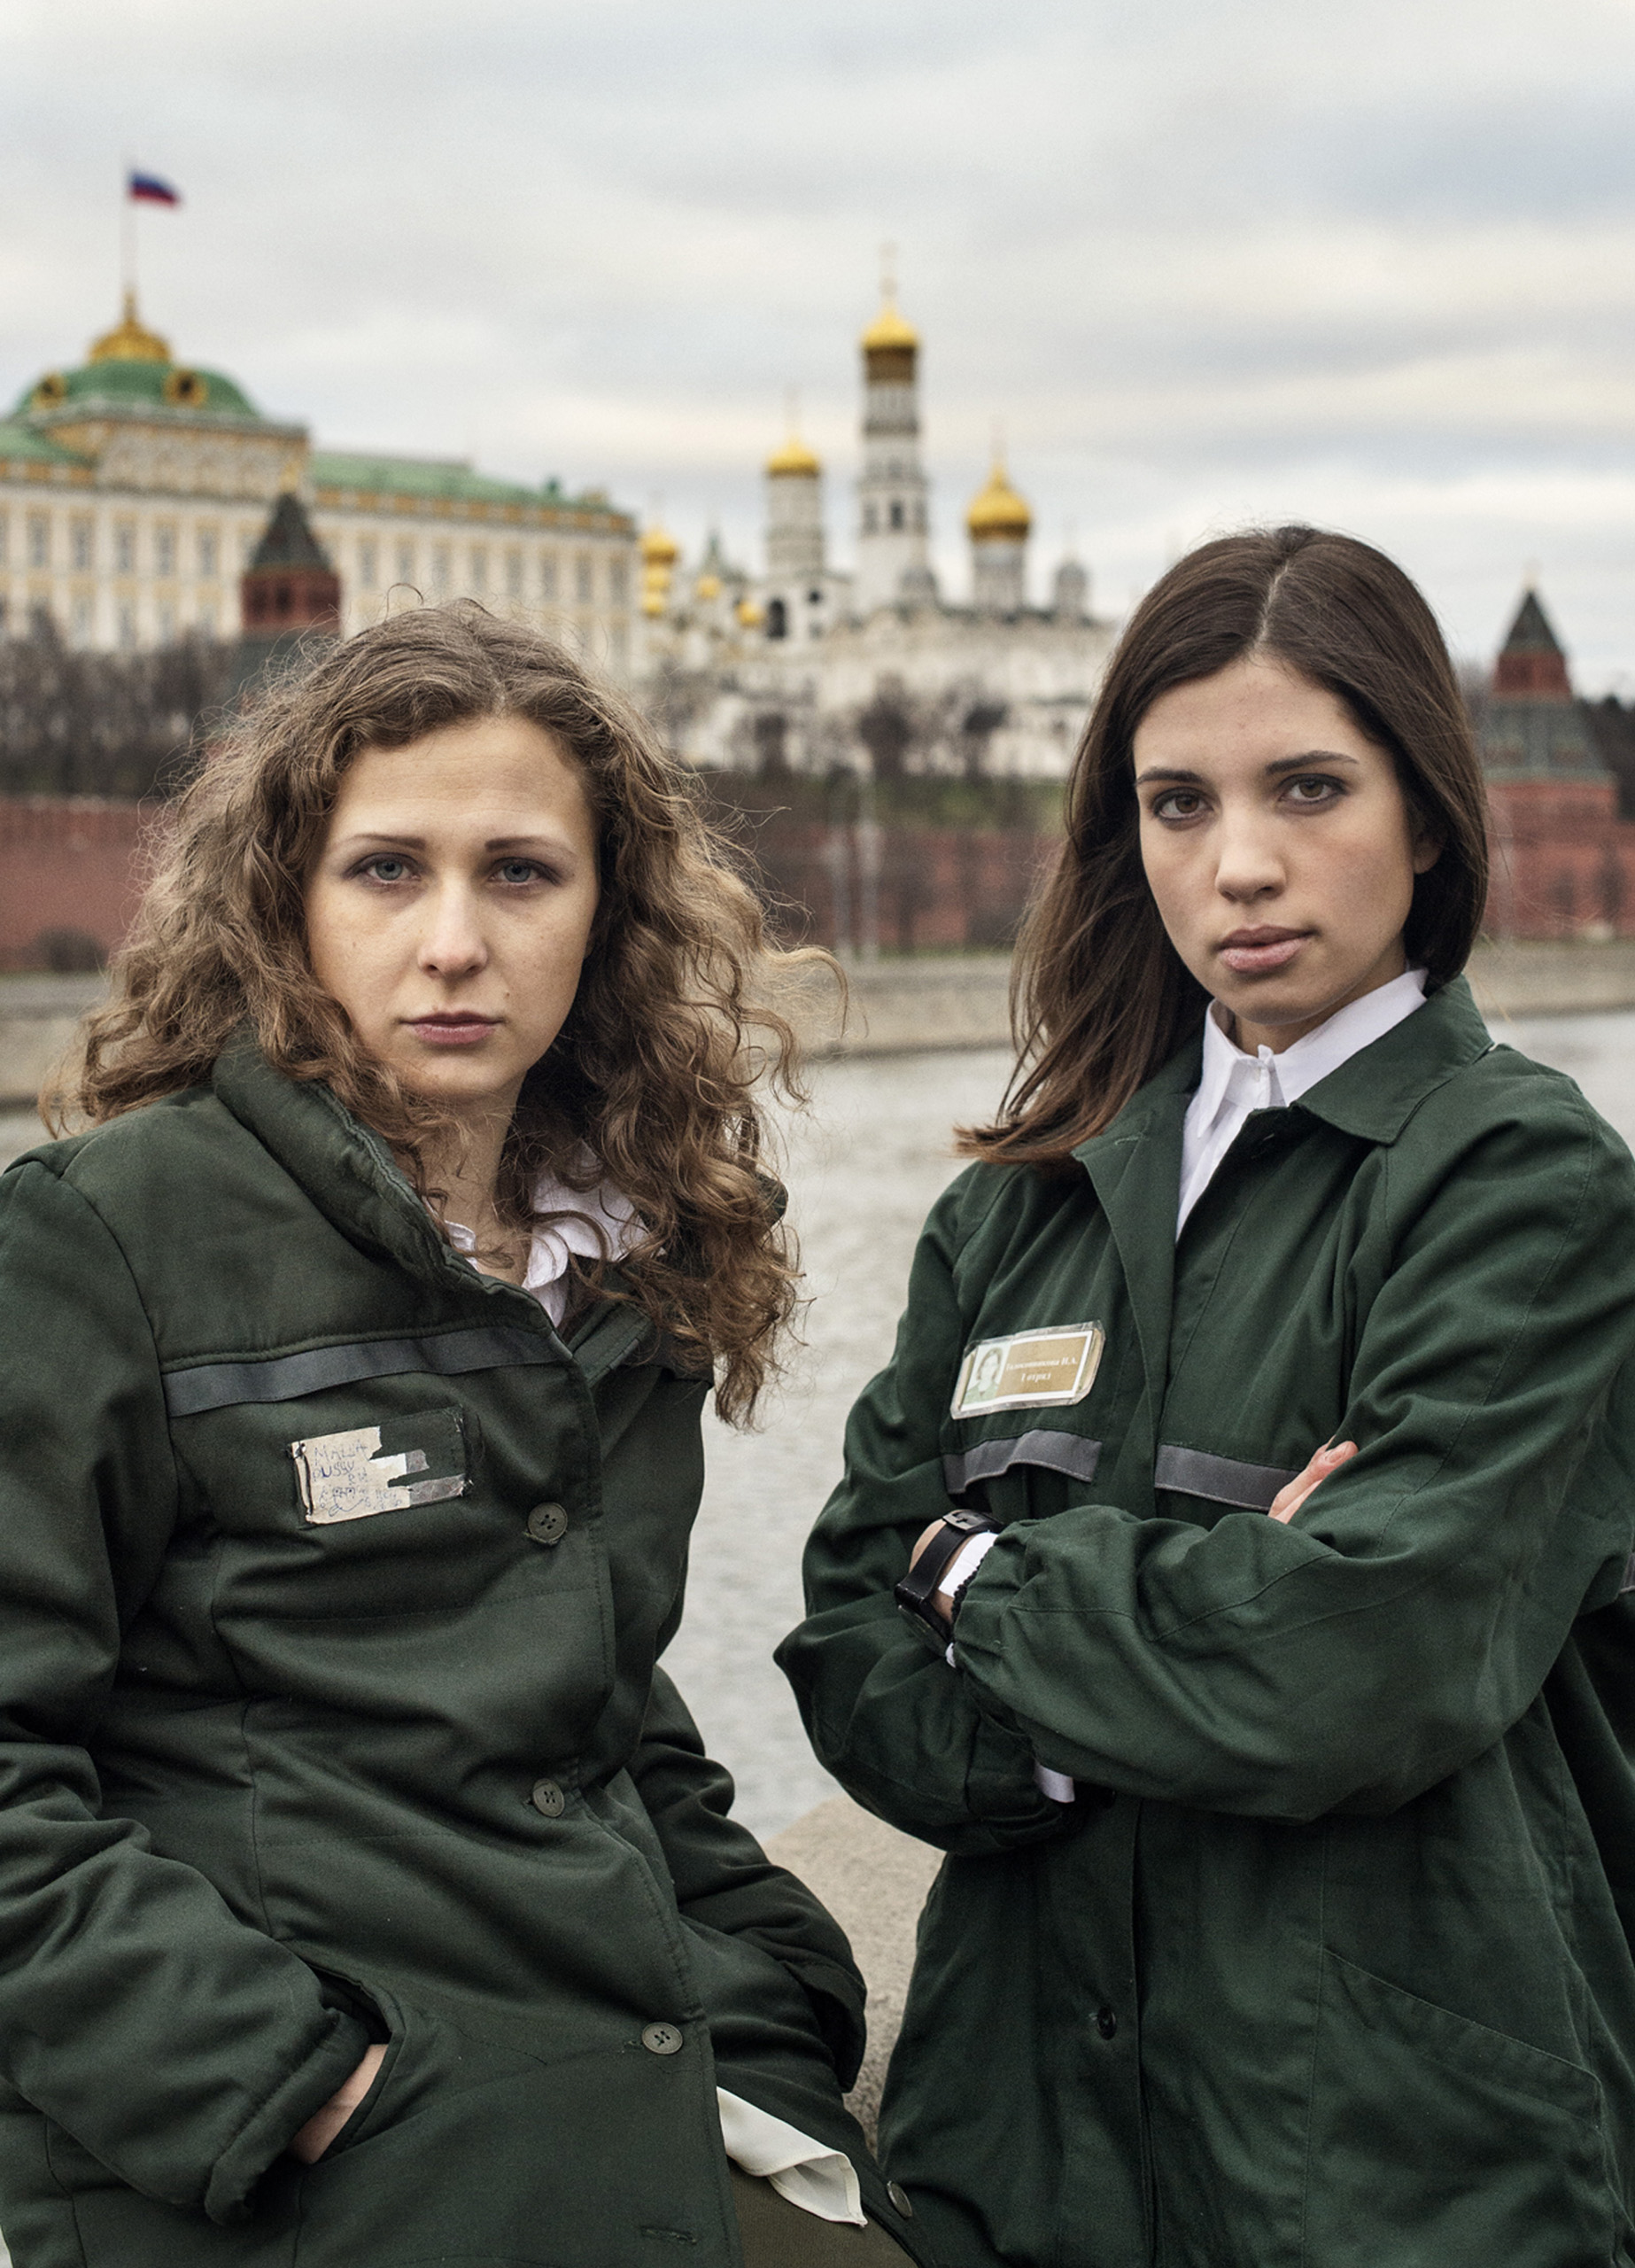 Maria Alyokhina (left) and Nadezhda Tolokonnikova. From  What Pussy Riot Does Next.  January 20, 2014 issue.